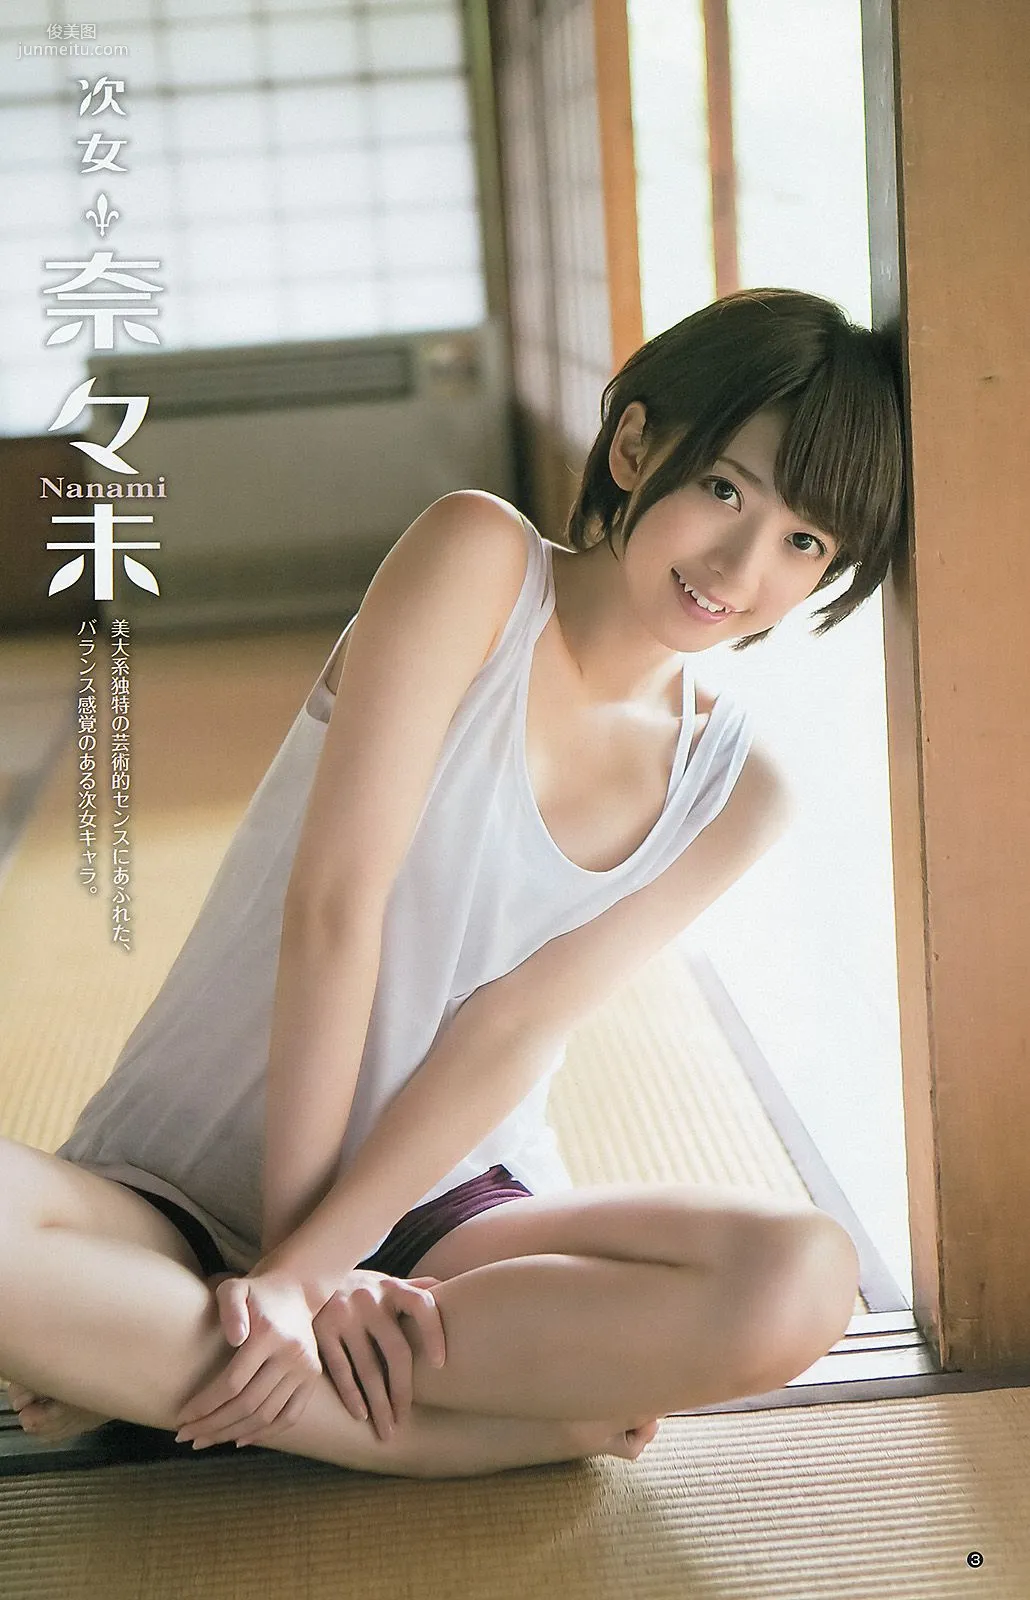 大島優子 乃木坂46 AKB48 ウェイティングガールズ [Weekly Young Jump] 2012年No.40 写真杂志11